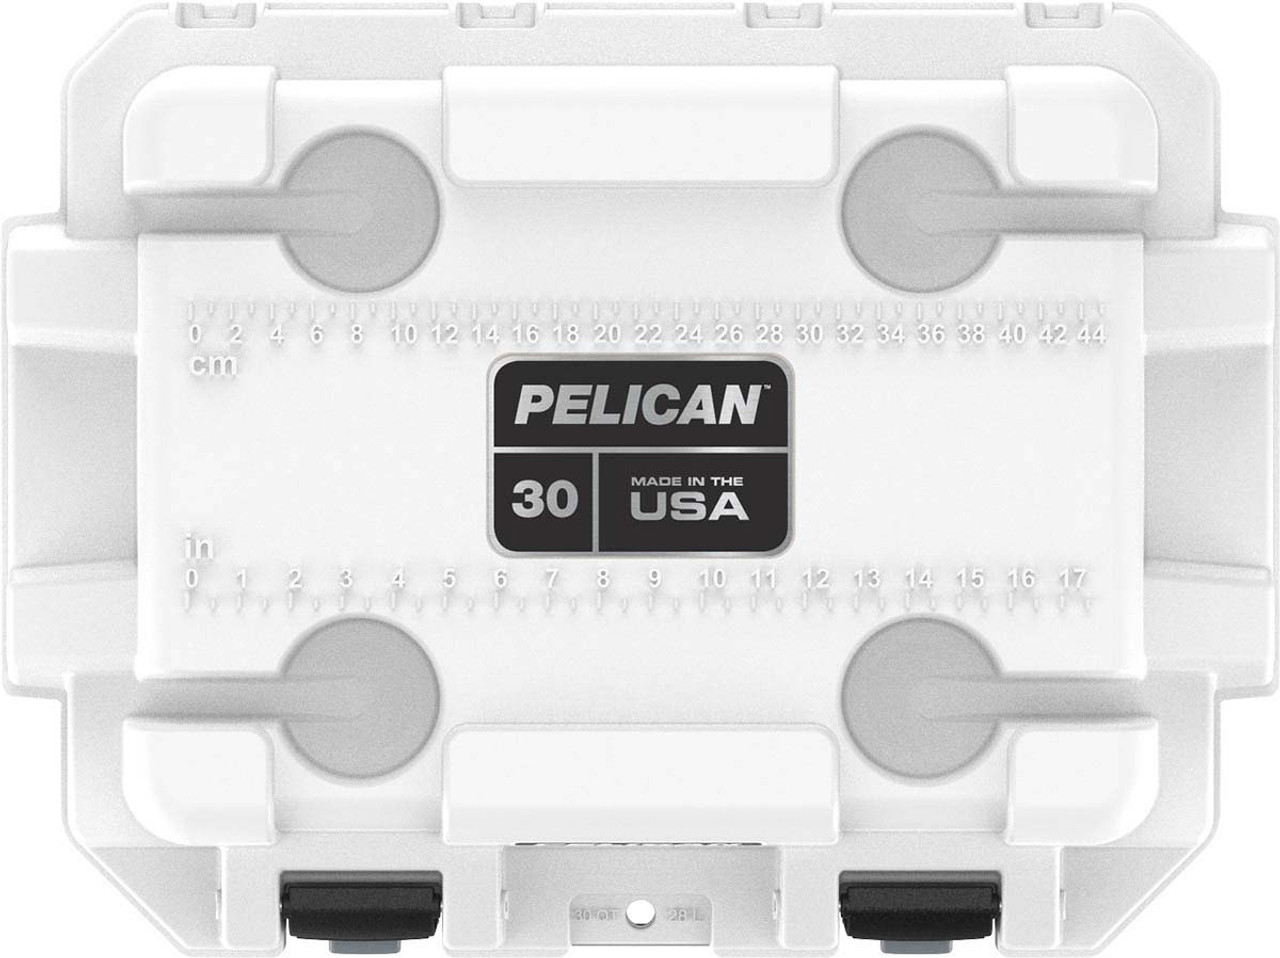 Pelican 30Q Elite Cooler